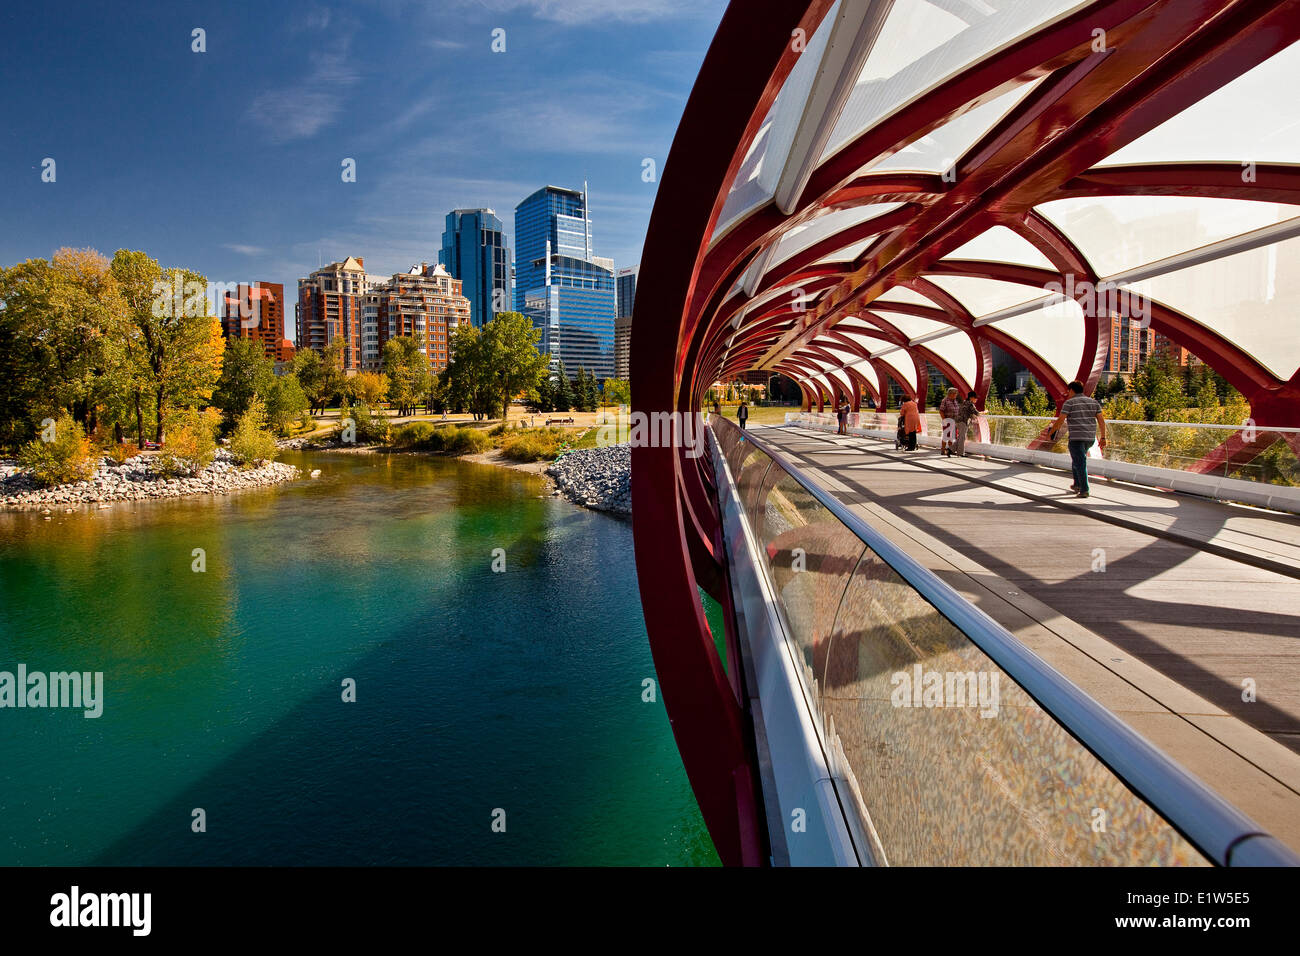 Calgary ponte di pace e il centro cittadino di highrise edifici, (Ponte di Pace è un ponte pedonale, progettato dal rinomato spagnolo archita Foto Stock